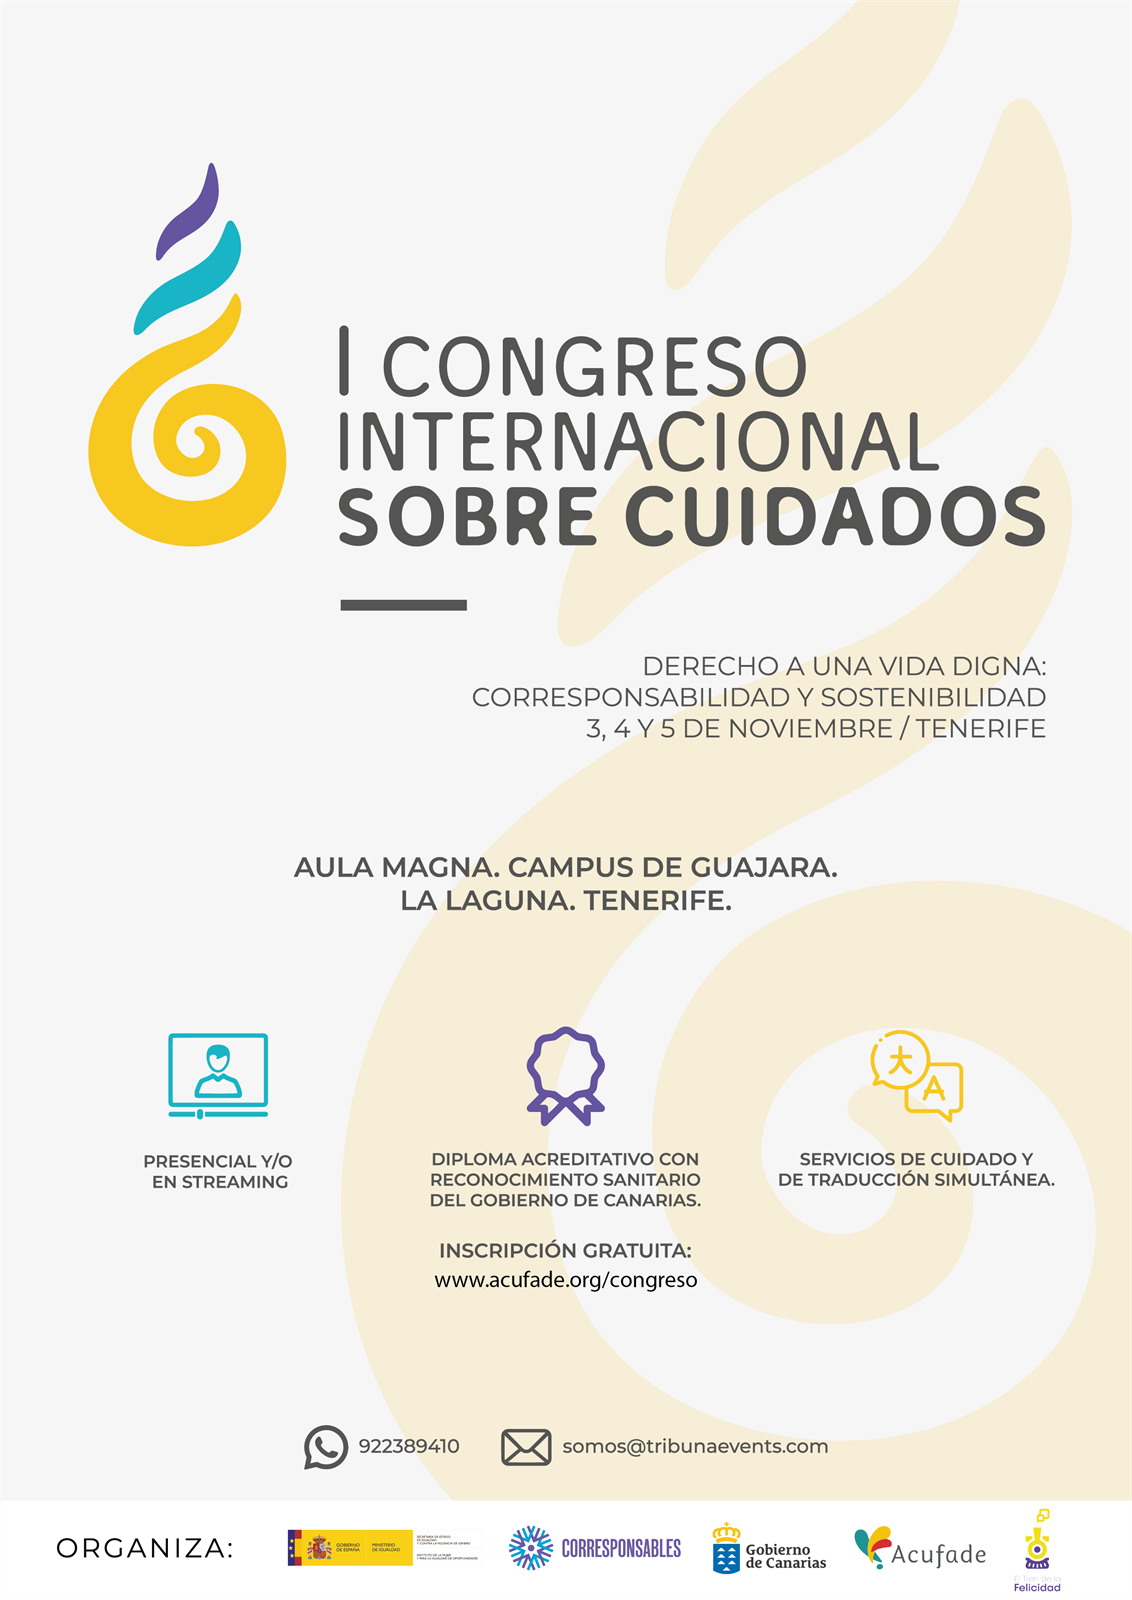 I Congreso Internacional sobre Cuidados